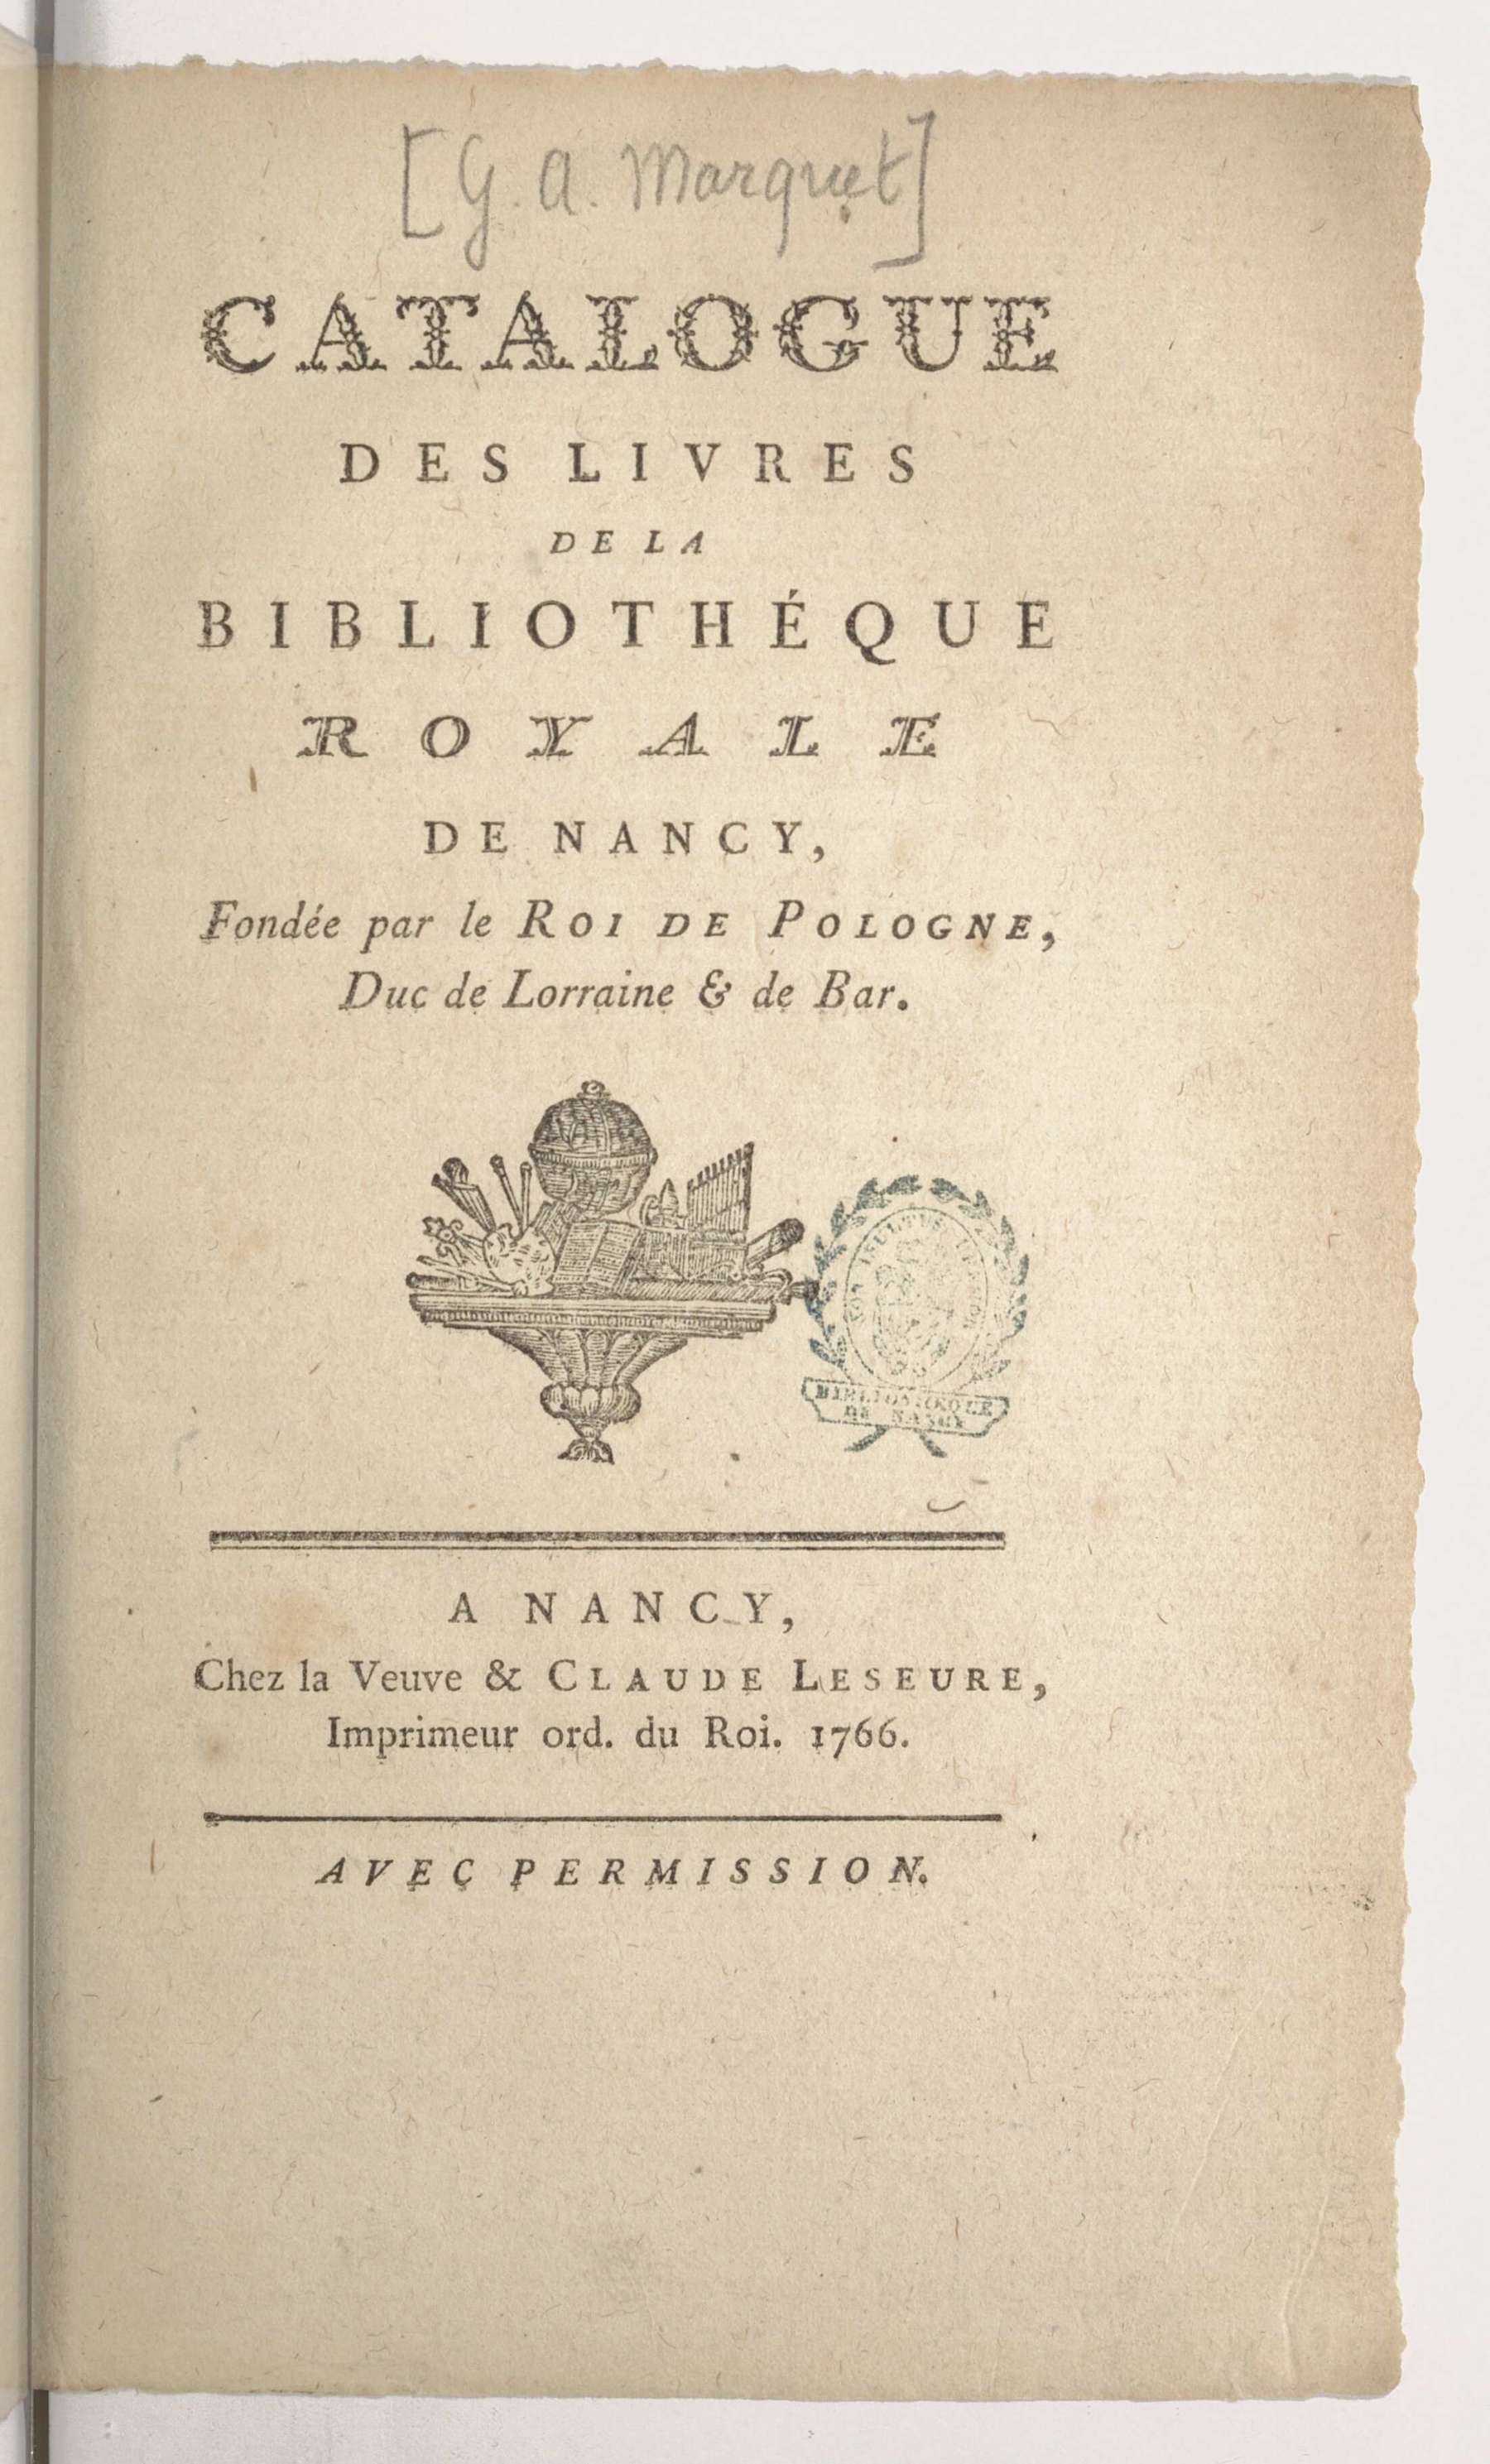 Contenu du Catalogue des livres de la bibliothéque royale de Nancy, fondée par le Roi de Pologne, Duc de Lorraine & de Bar